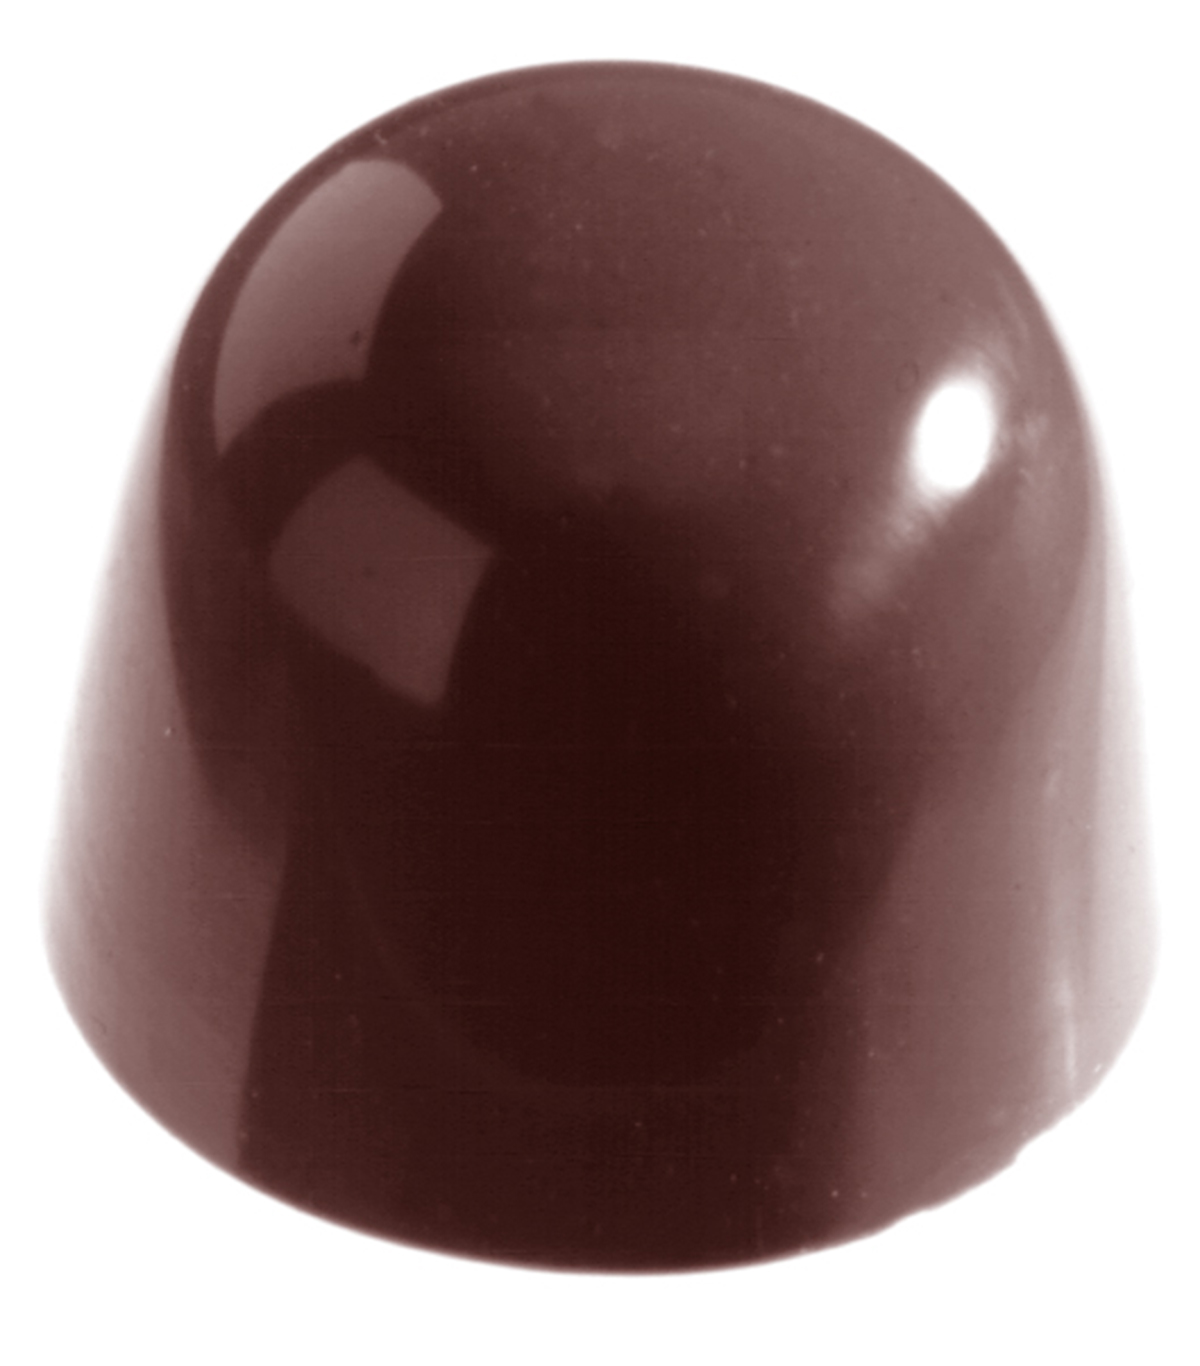 Se Professionel chokoladeform i polycarbonat - Cone Ø30x2,5 cm CW1157 hos BageTid.dk